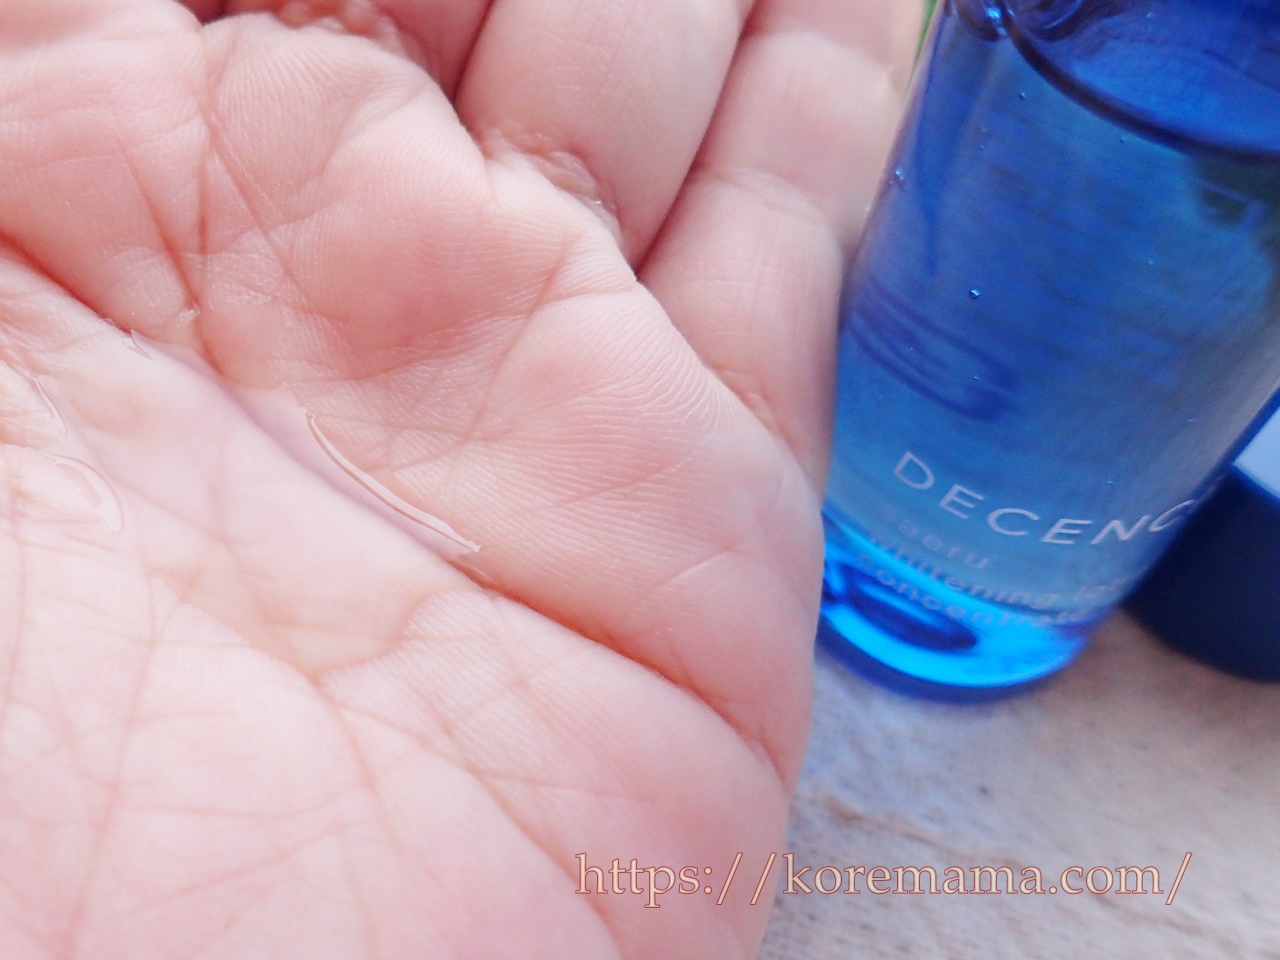 ディセンシア「サエル」薬用美白化粧水の口コミ